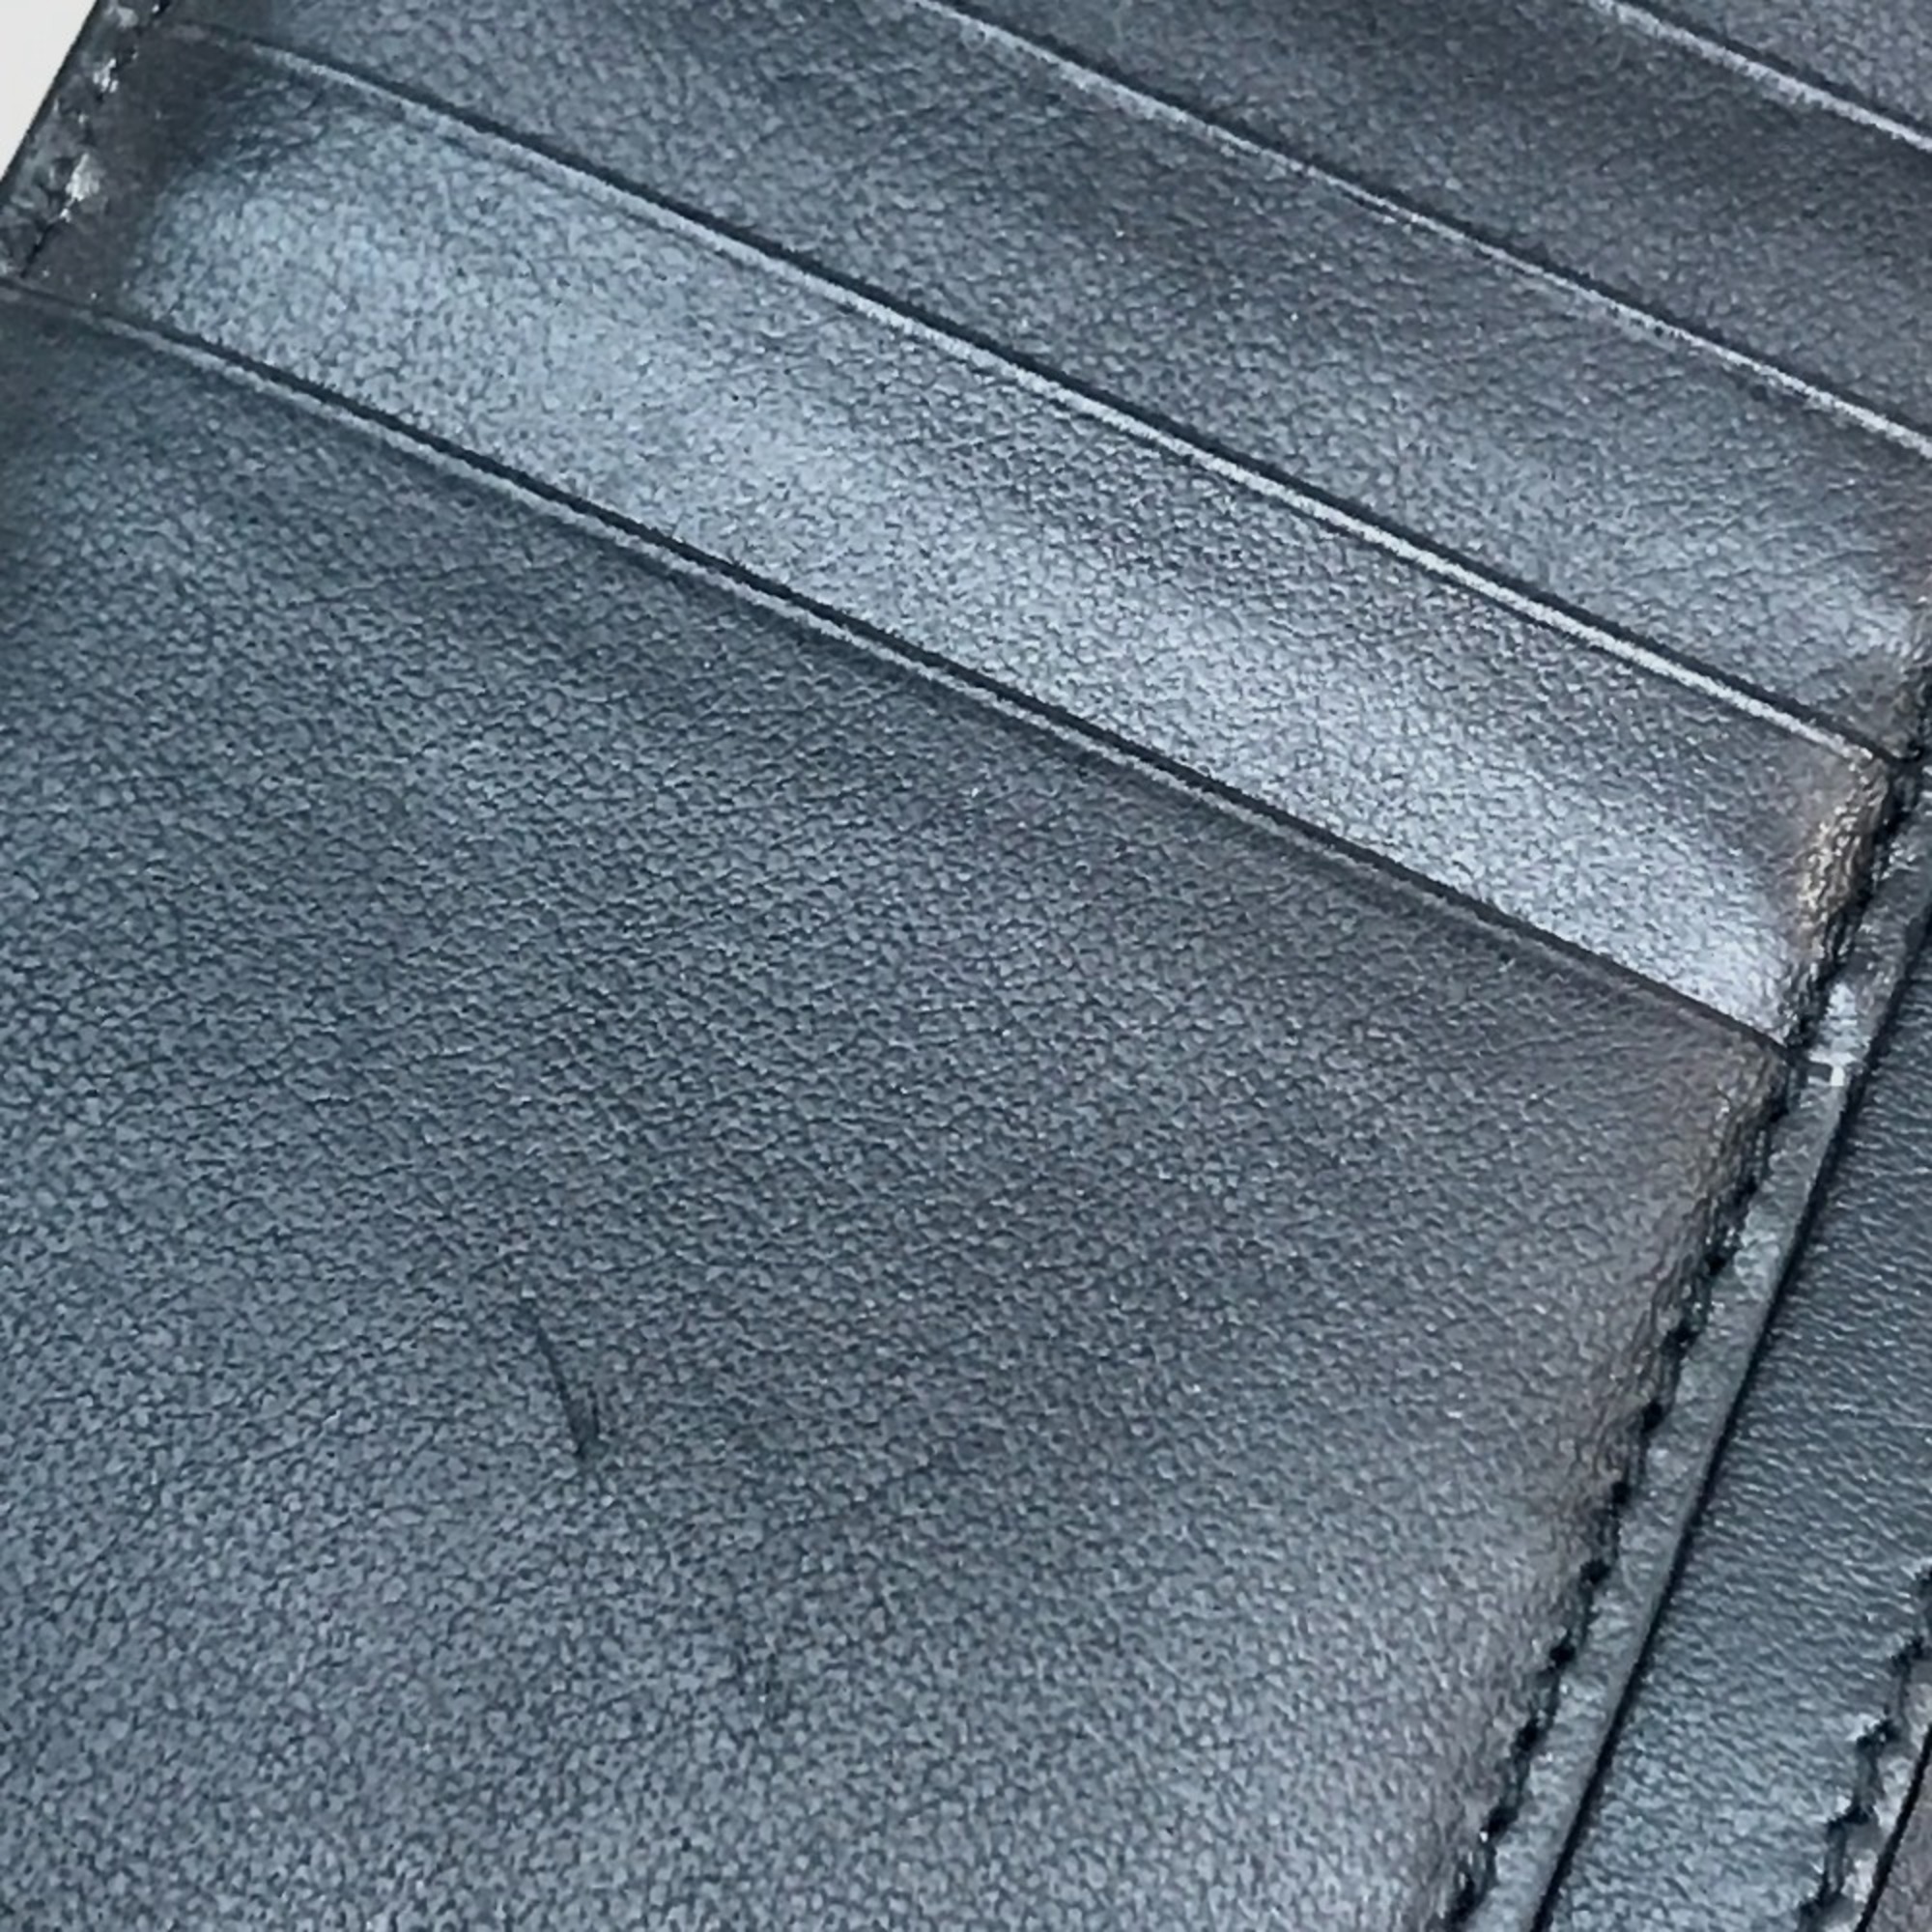 BURBERRY 8016613 Cavendish Vintage Check Long Wallet PVC/Leather Men's Beige/Black